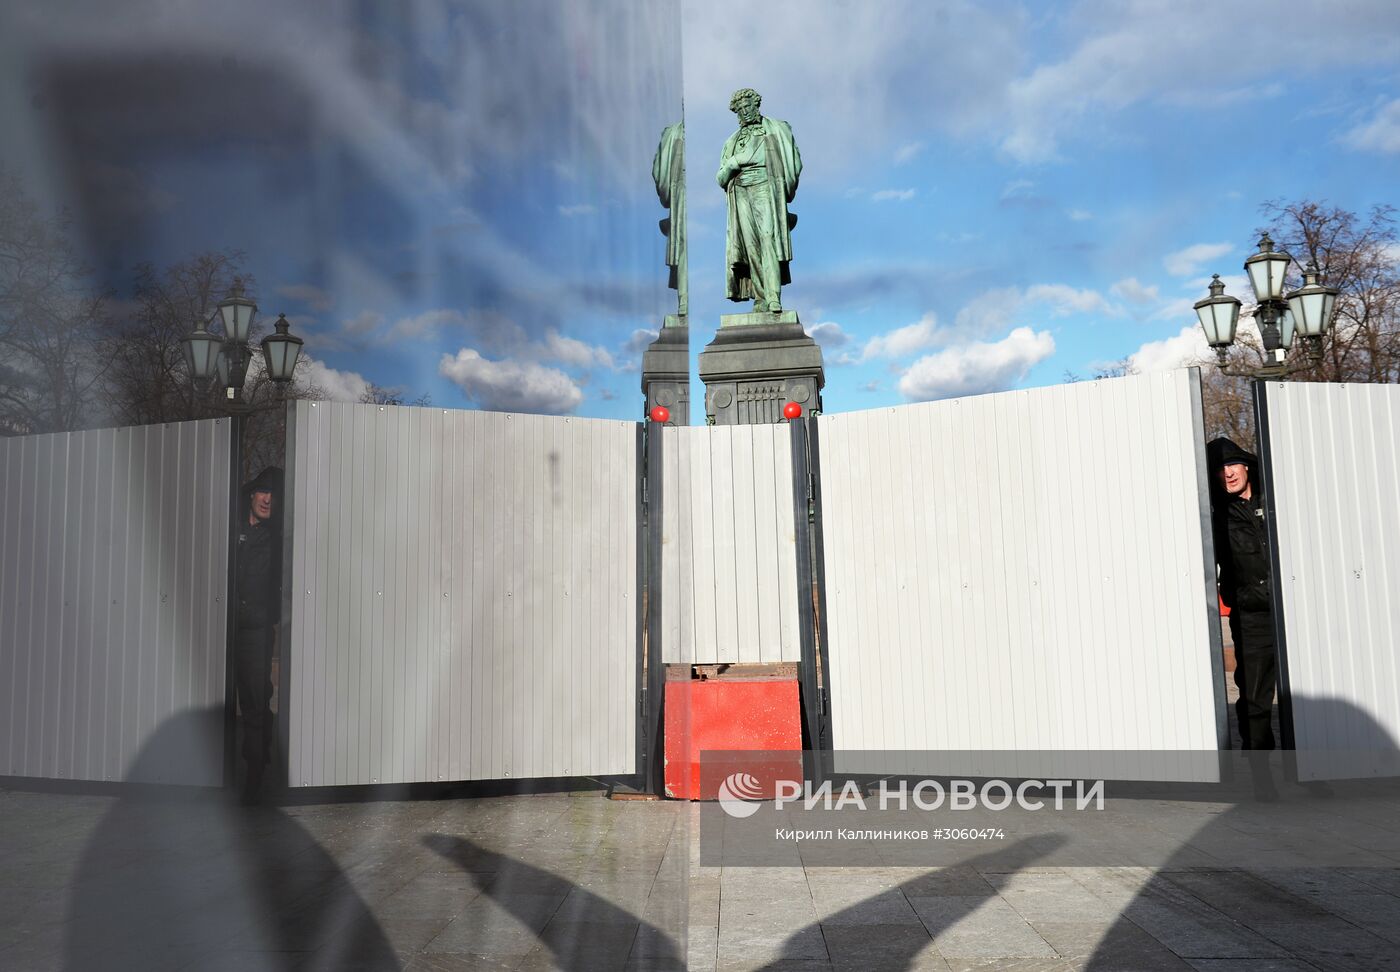 Реставрация памятника А.С. Пушкину началась в Москве